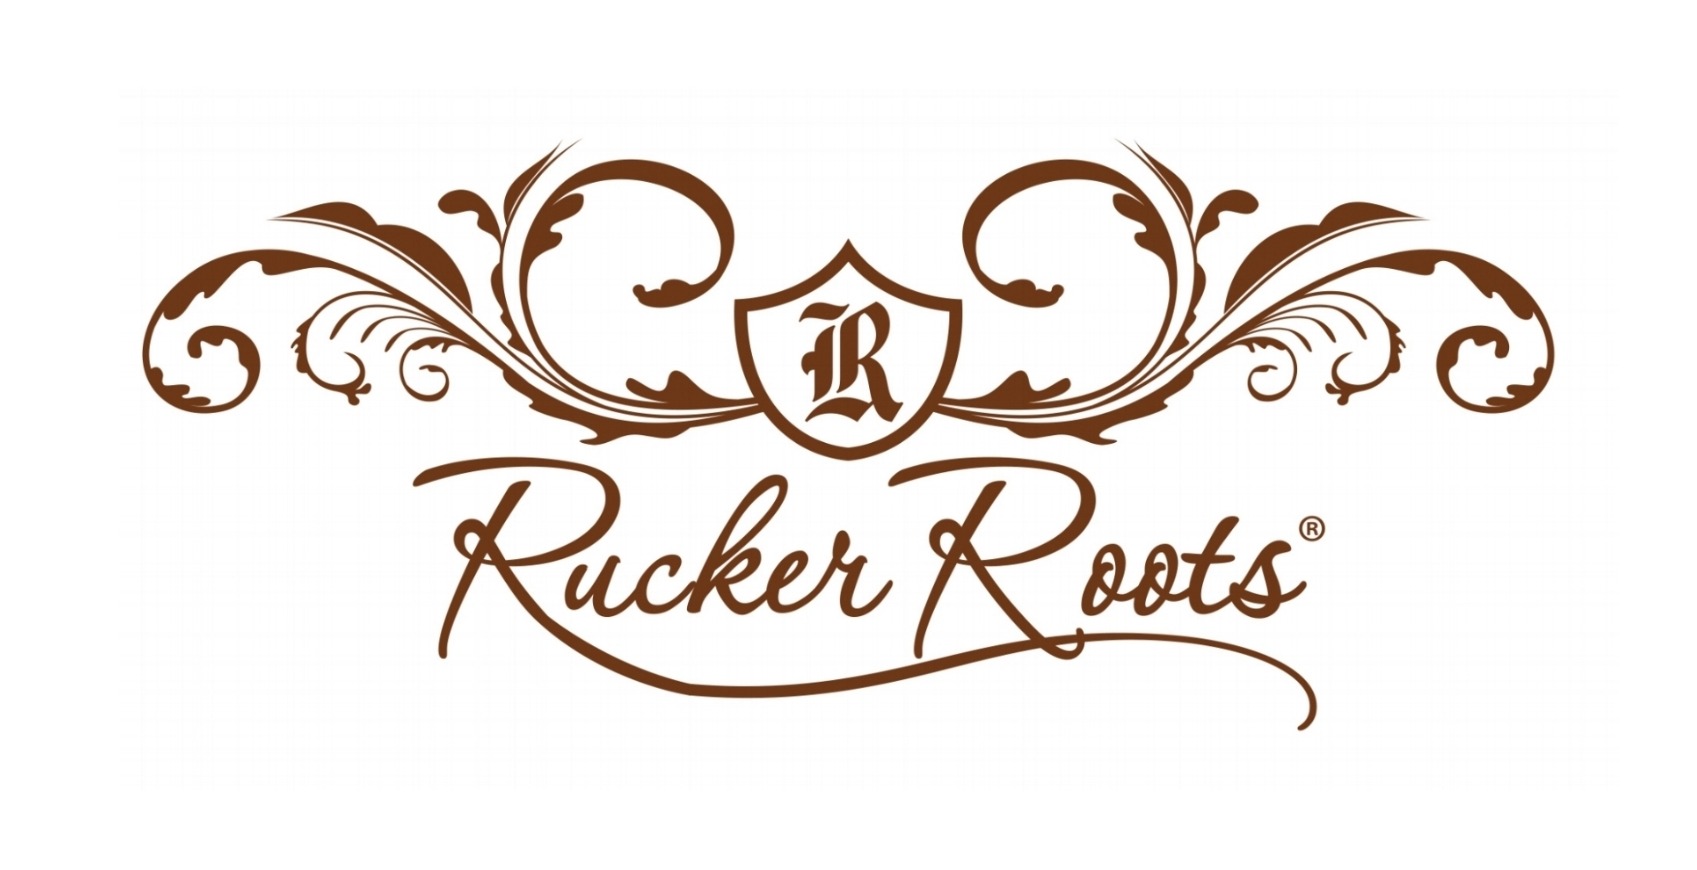 Rucker Roots